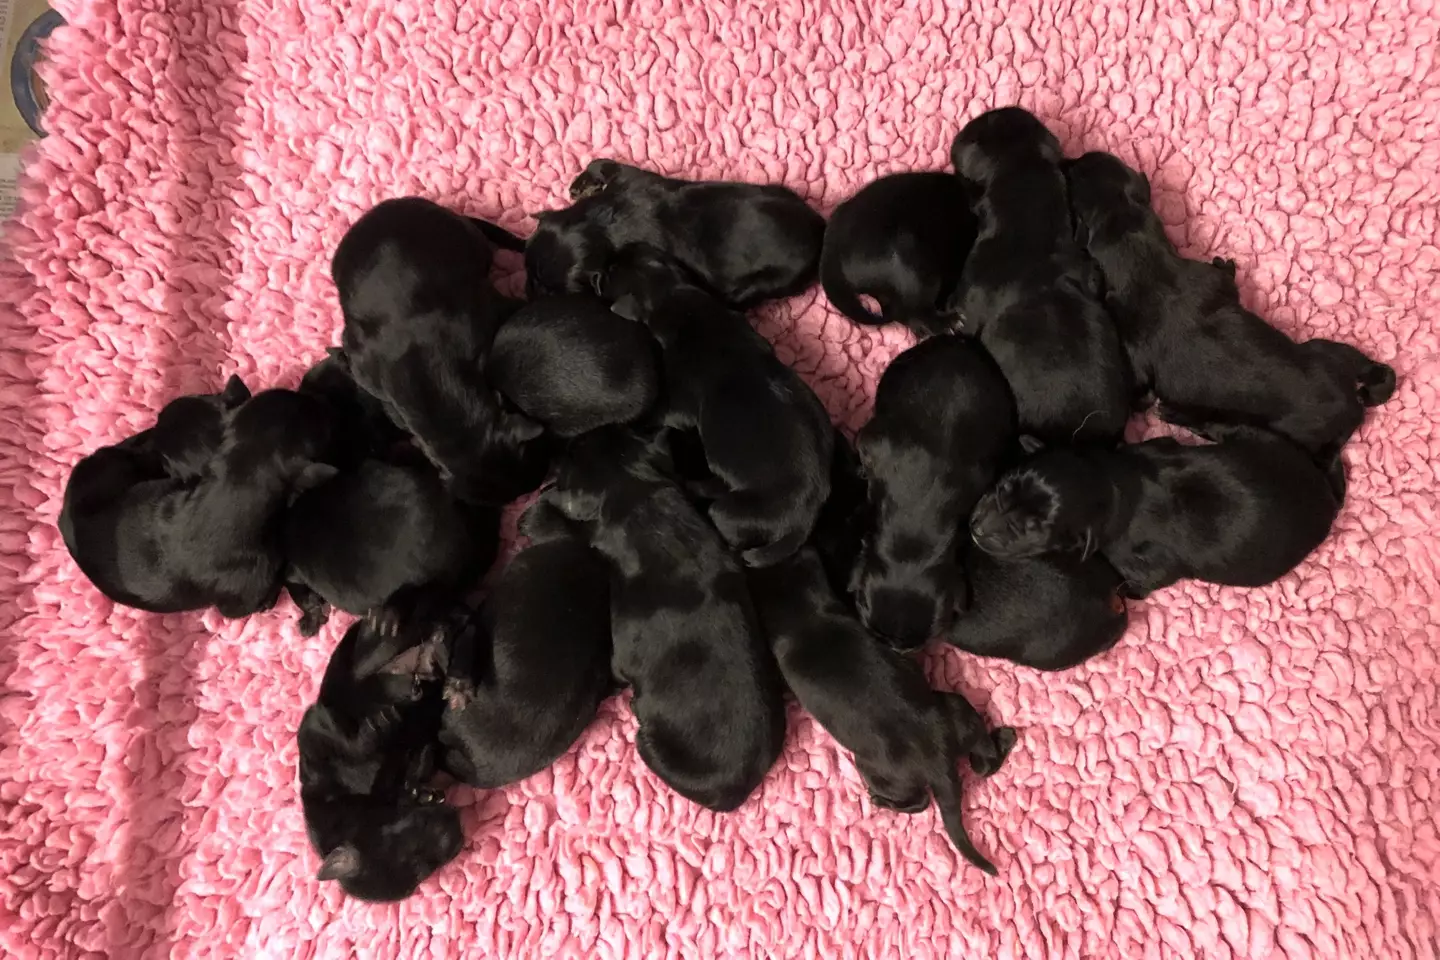 A shocking 16 puppies were born (